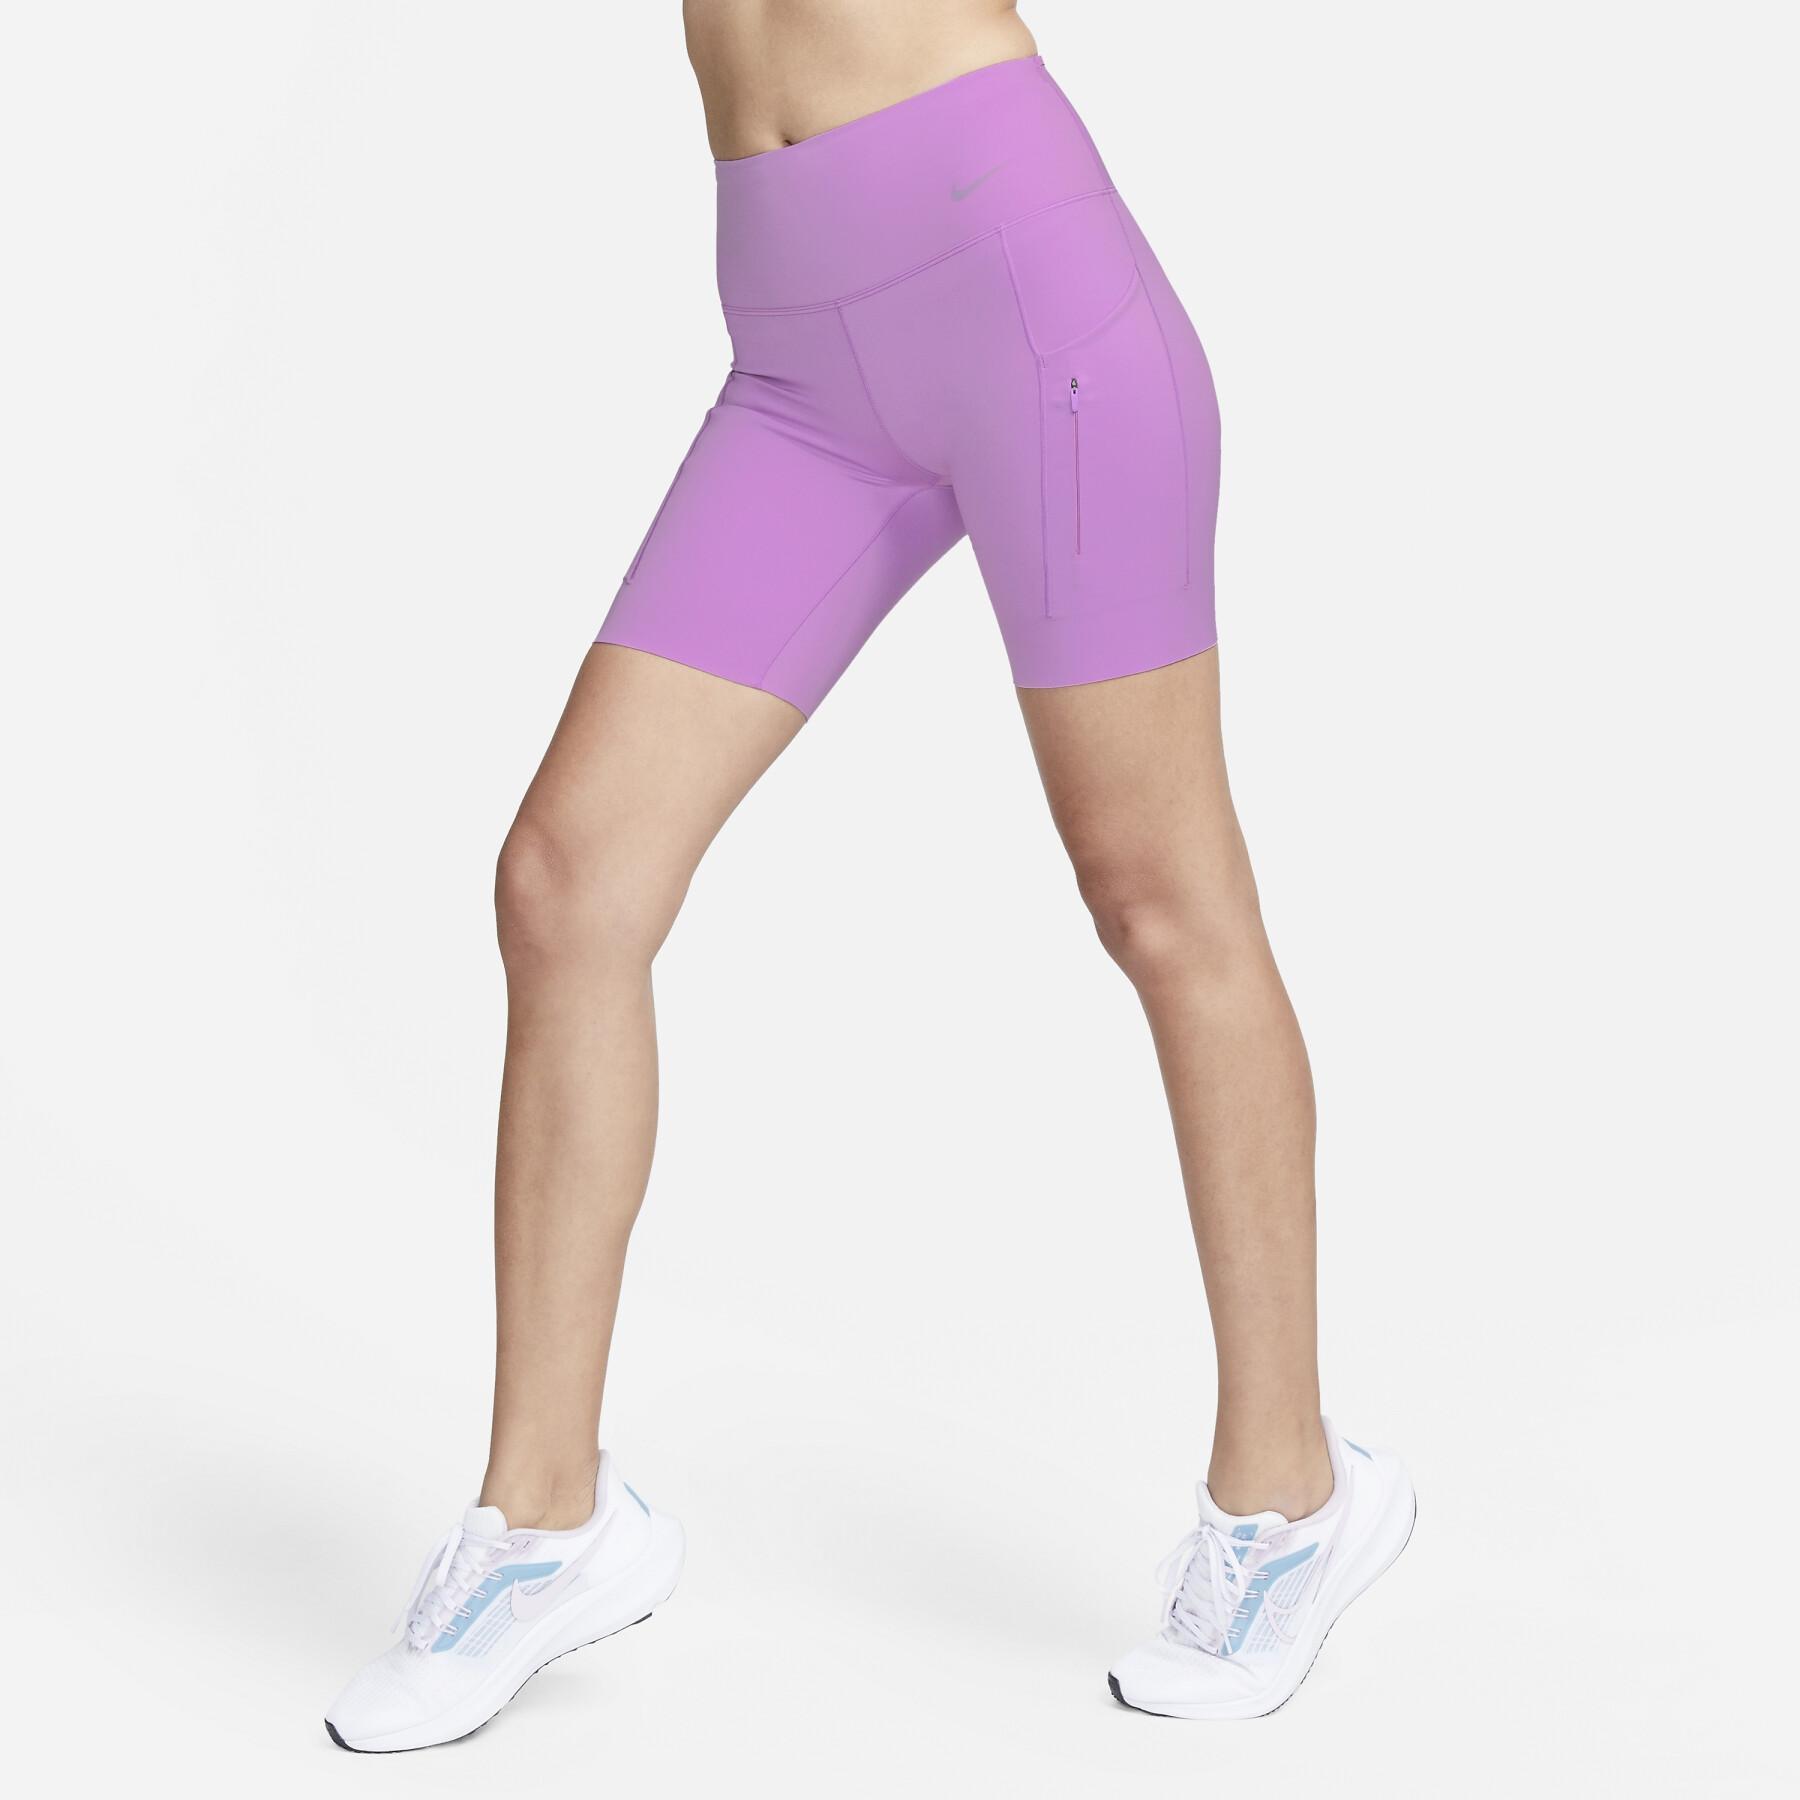 Shorts för kvinnor Nike Dri-FIT Go MR 8 "